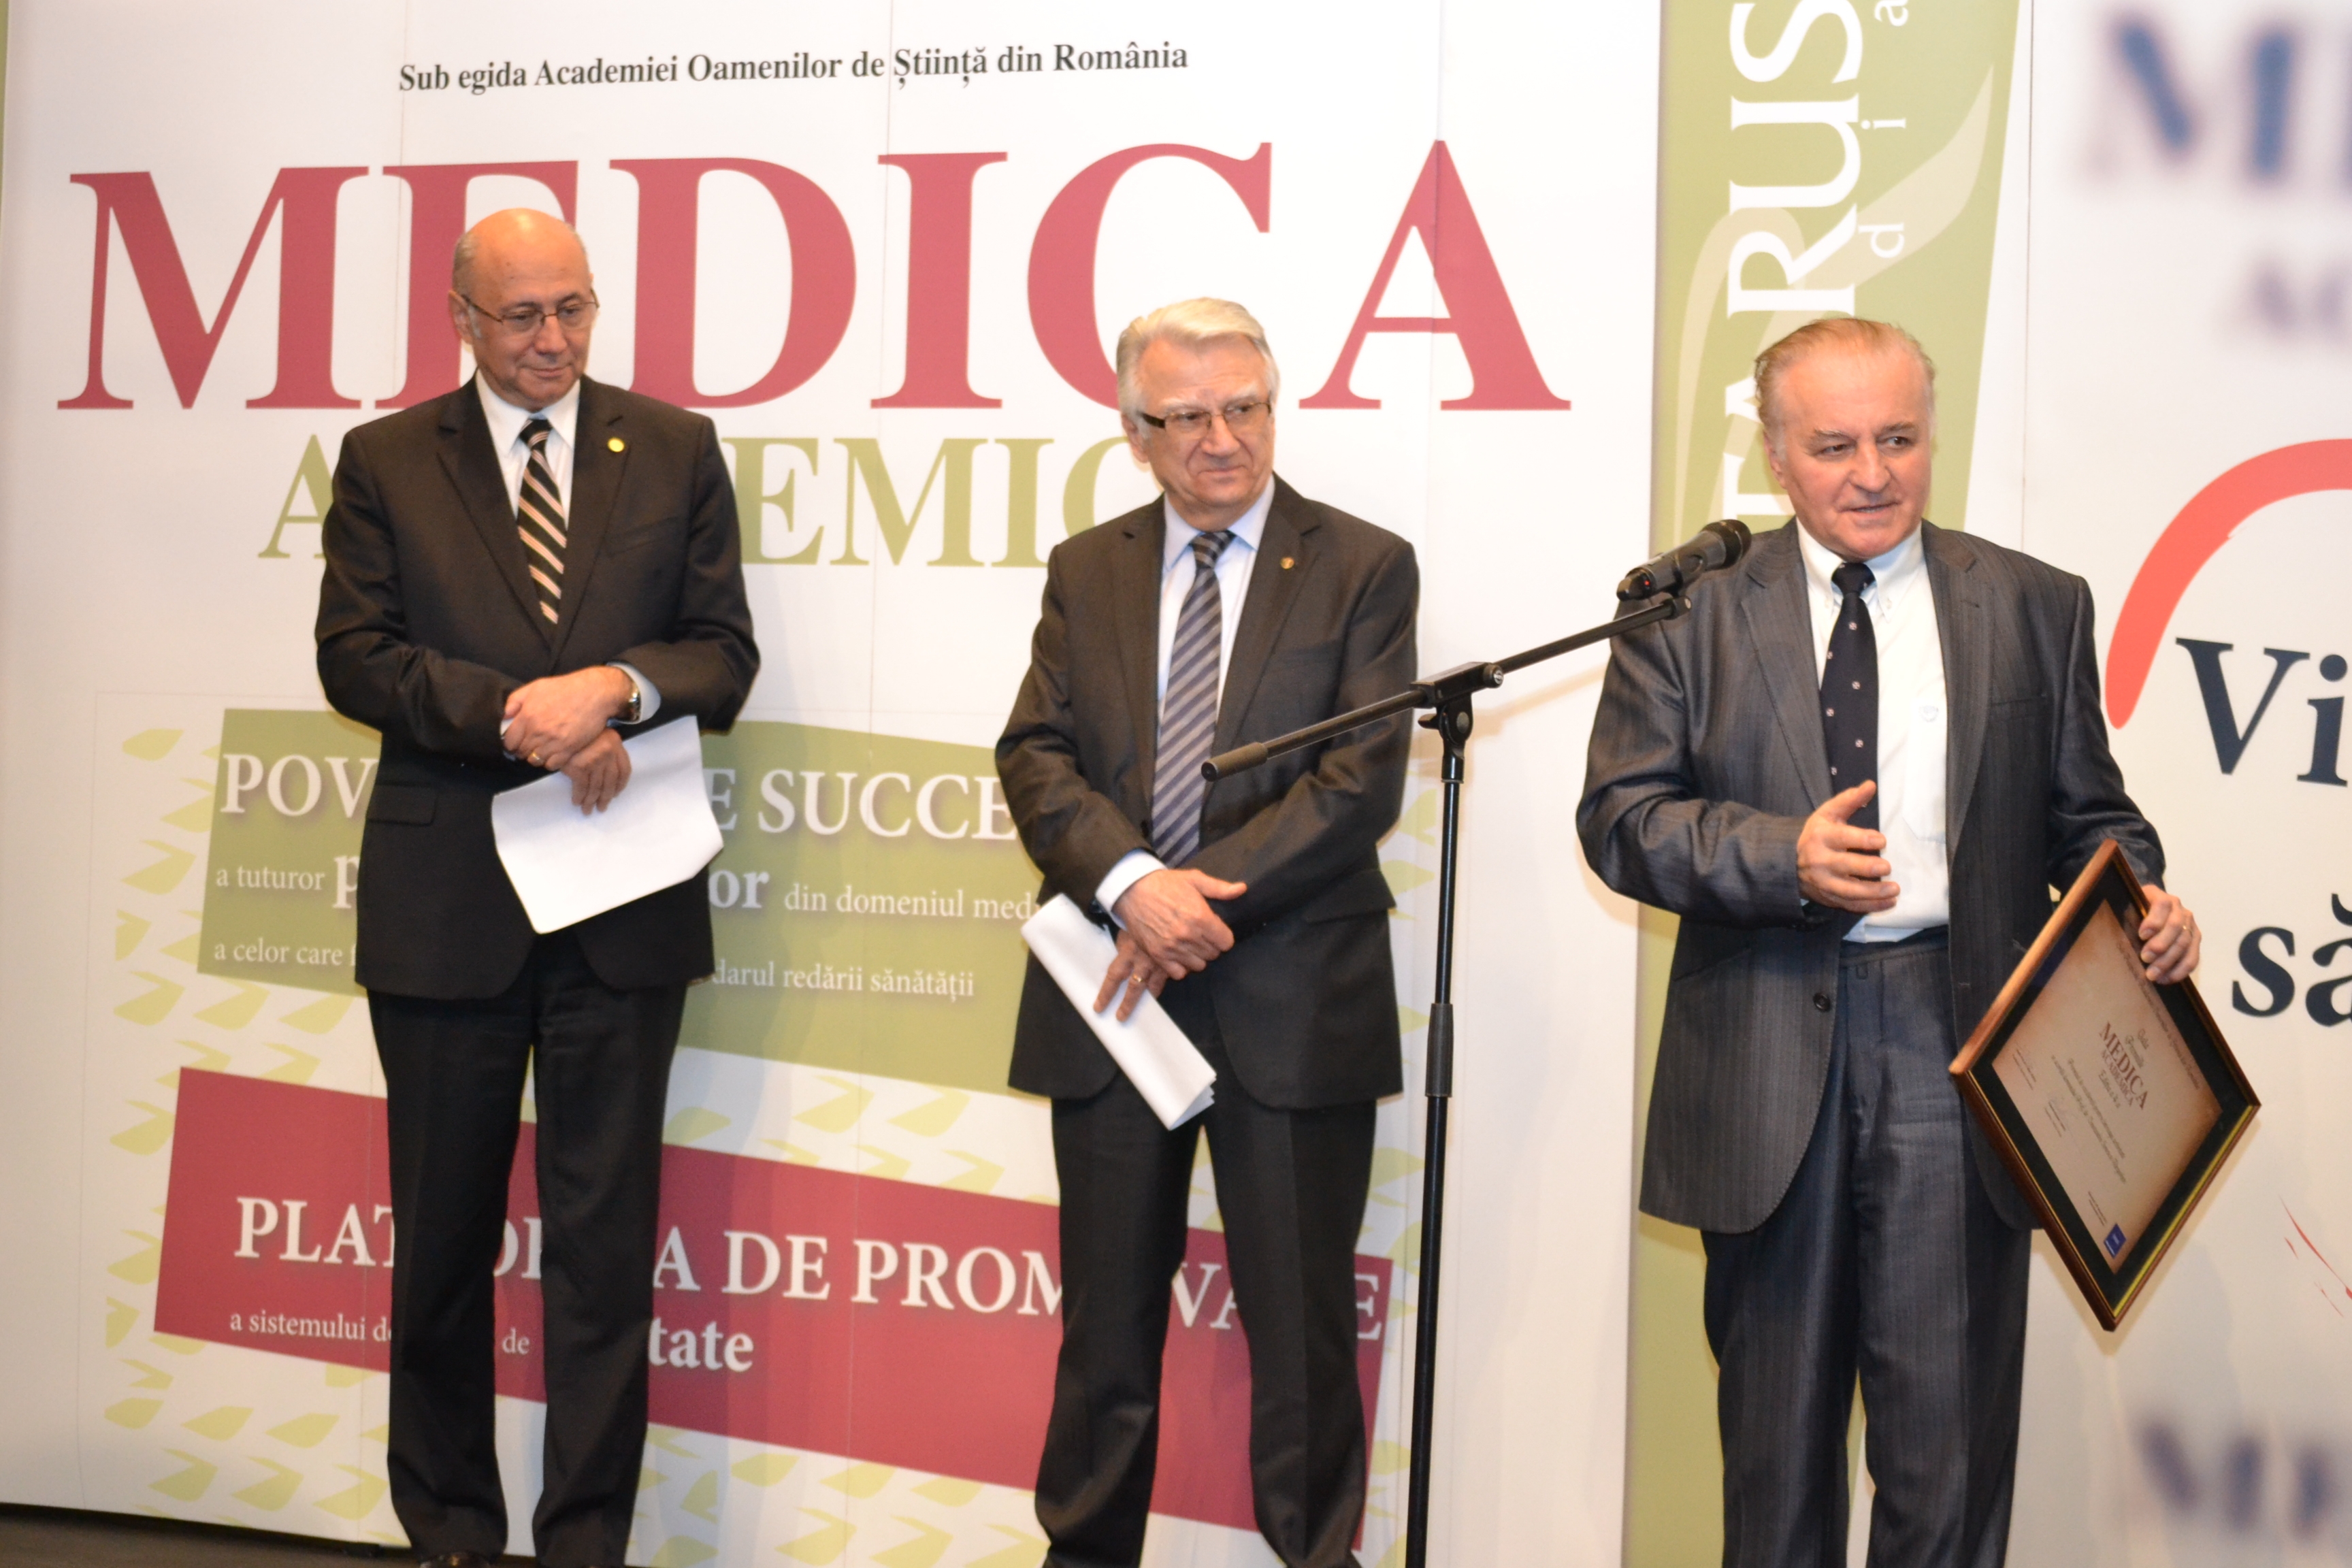 Prof. dr. Vladimir Beliş şi Prof. dr. Constantin Ionescu Târgovişte premiaţi pentru întreaga activitate